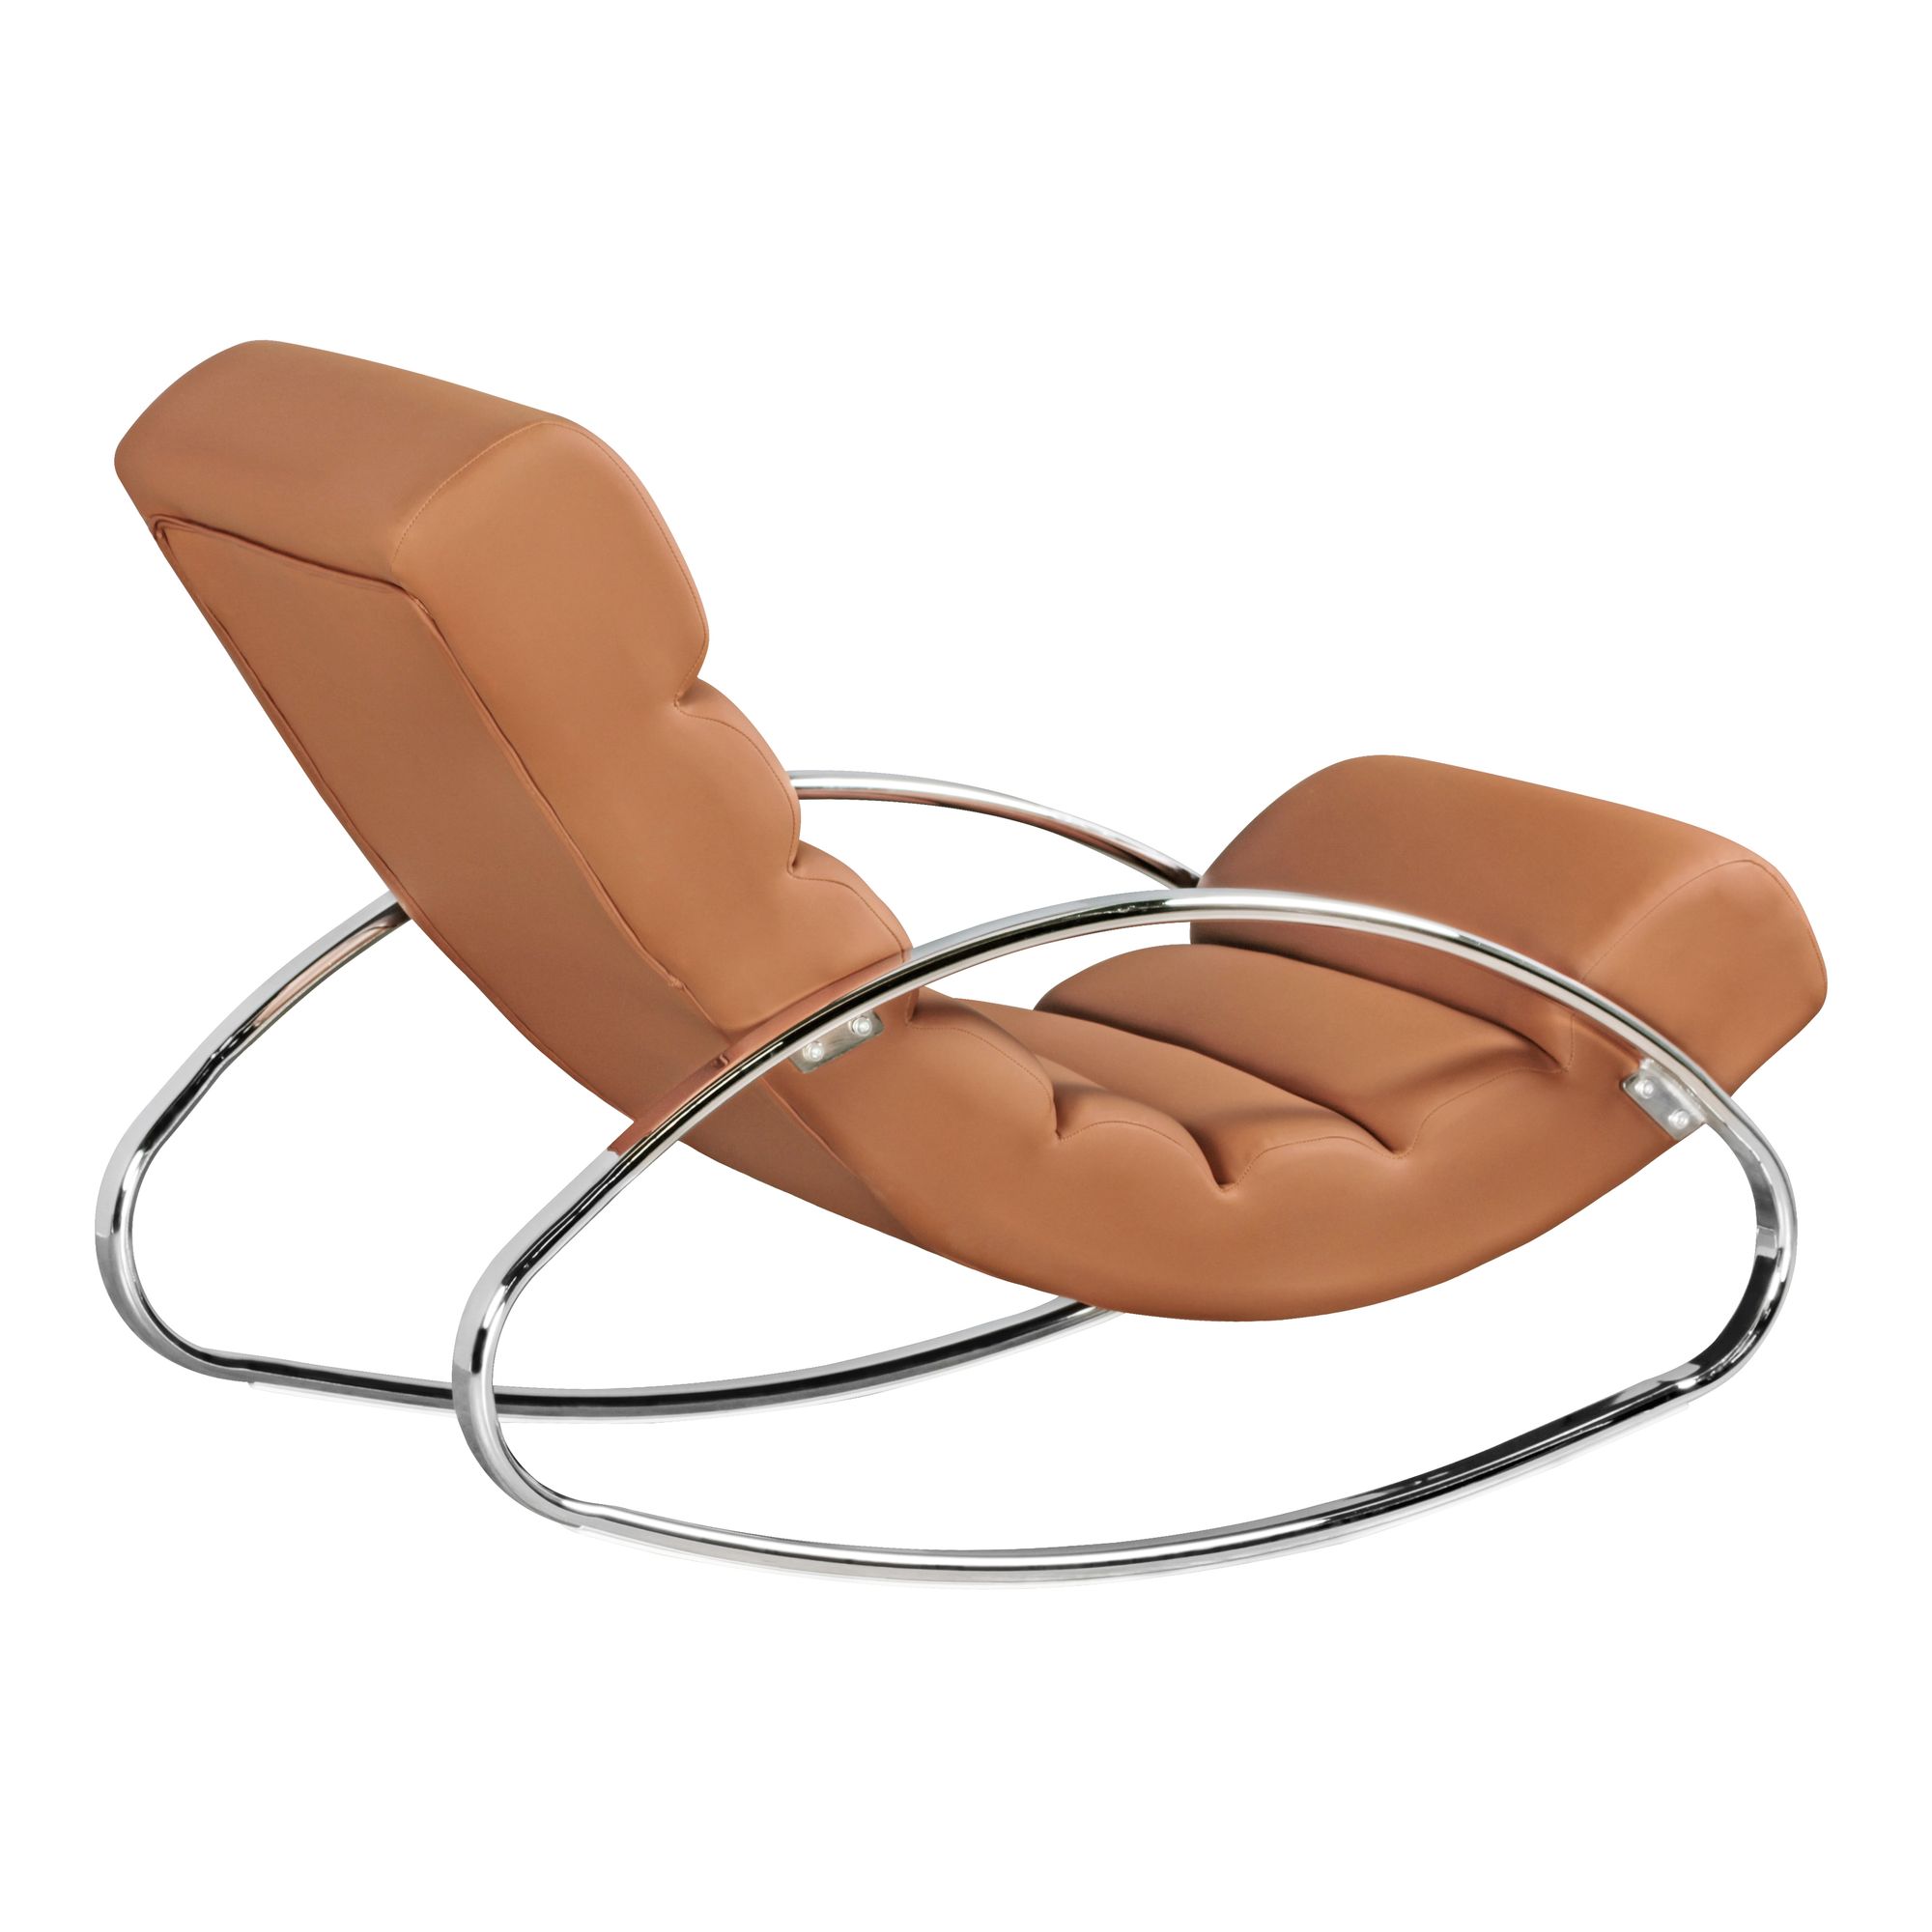 Doe herleven Converteren Punt ergonomische fauteuil bruin - Hoogglans meubelen / mango houten meubelen |  Aktie Wonen.nl